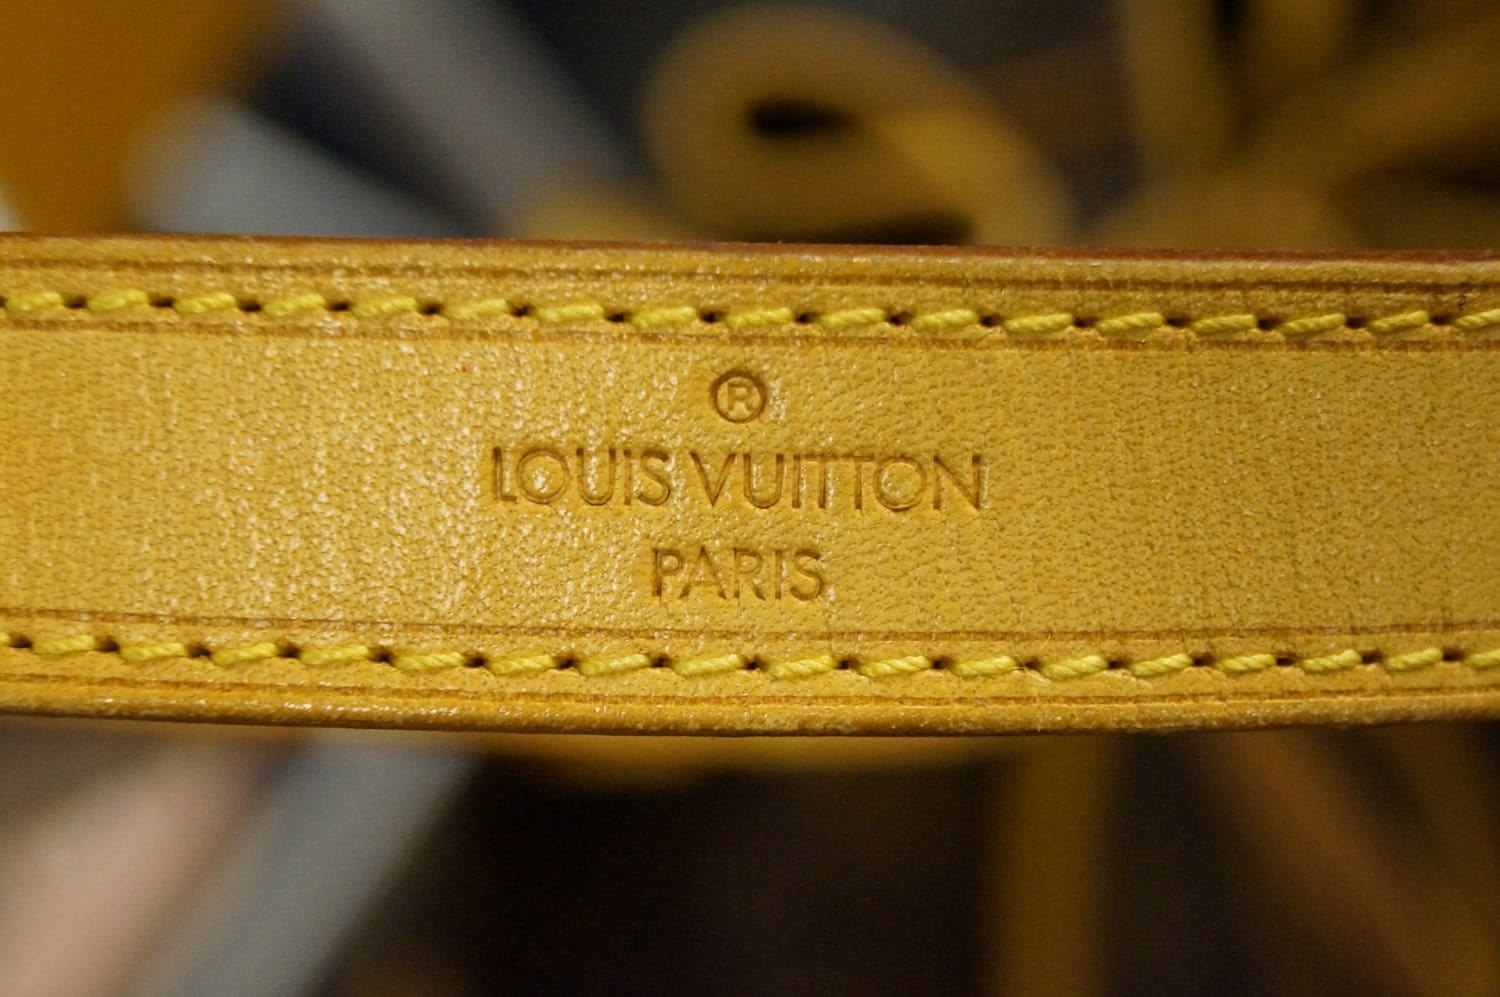 Louis Vuitton lança novas cores e padronagens para bolsas e